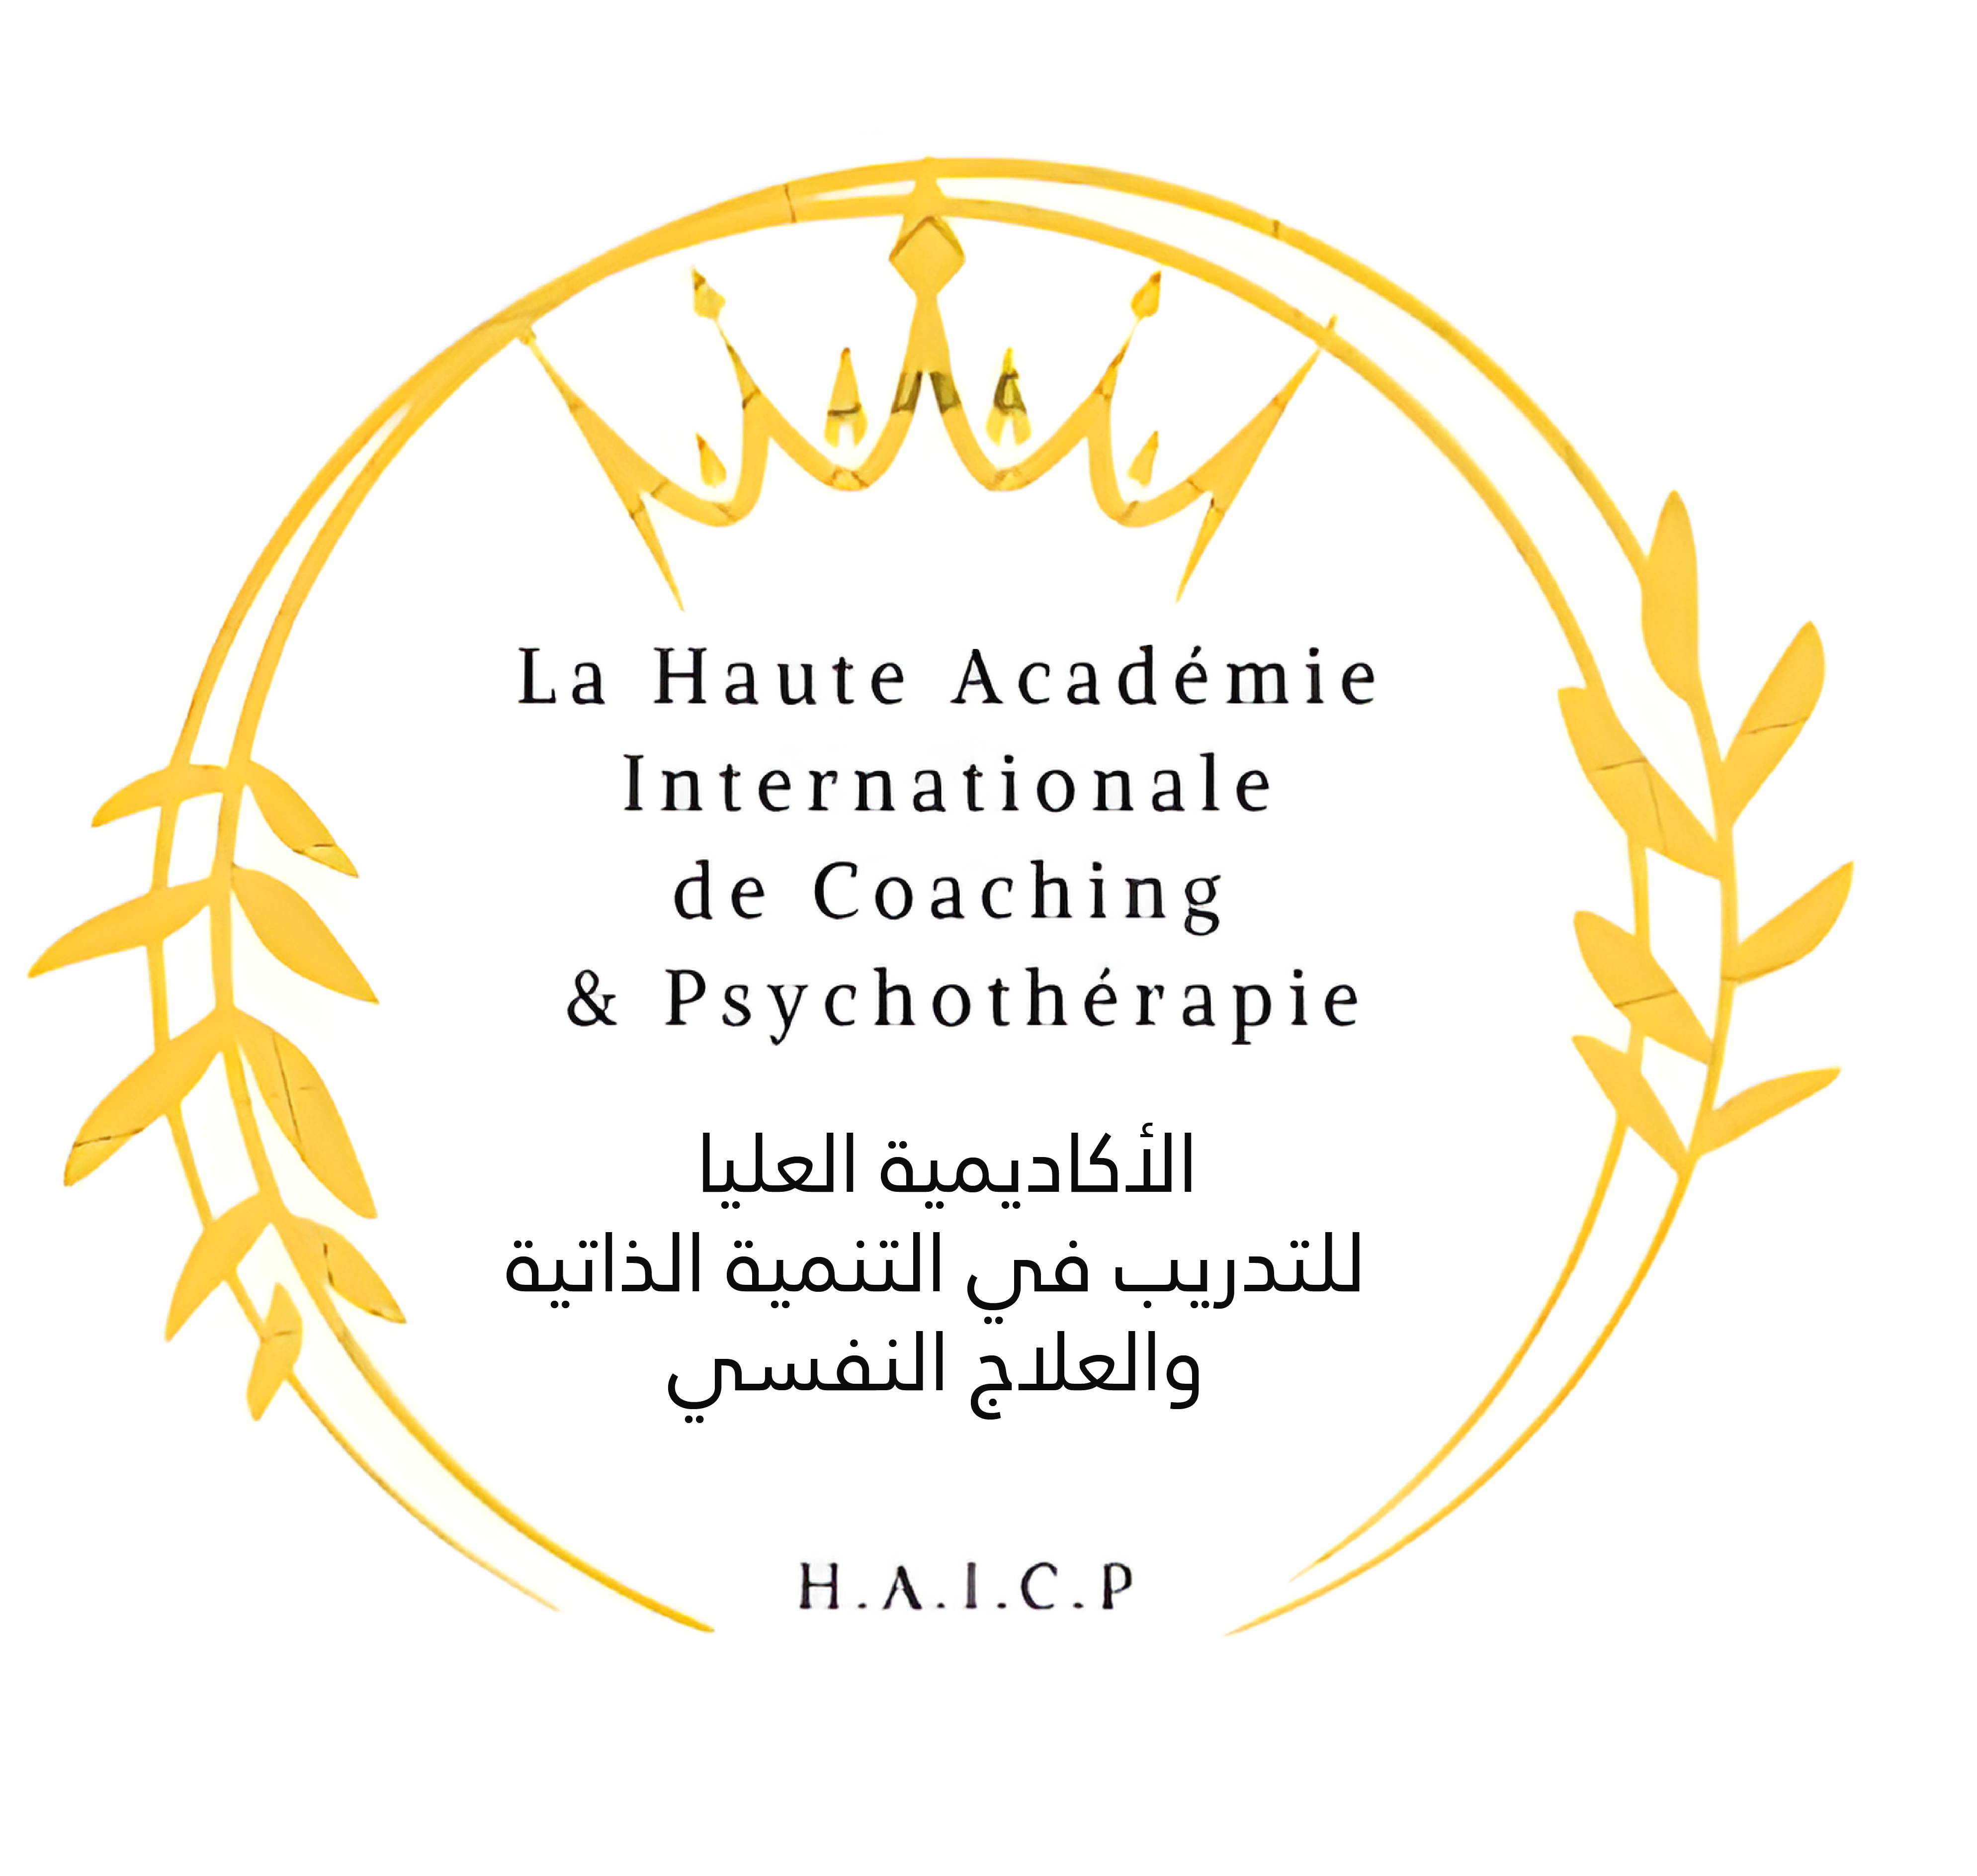 La Haute Académie Internationale de Coaching & Psychothérapie